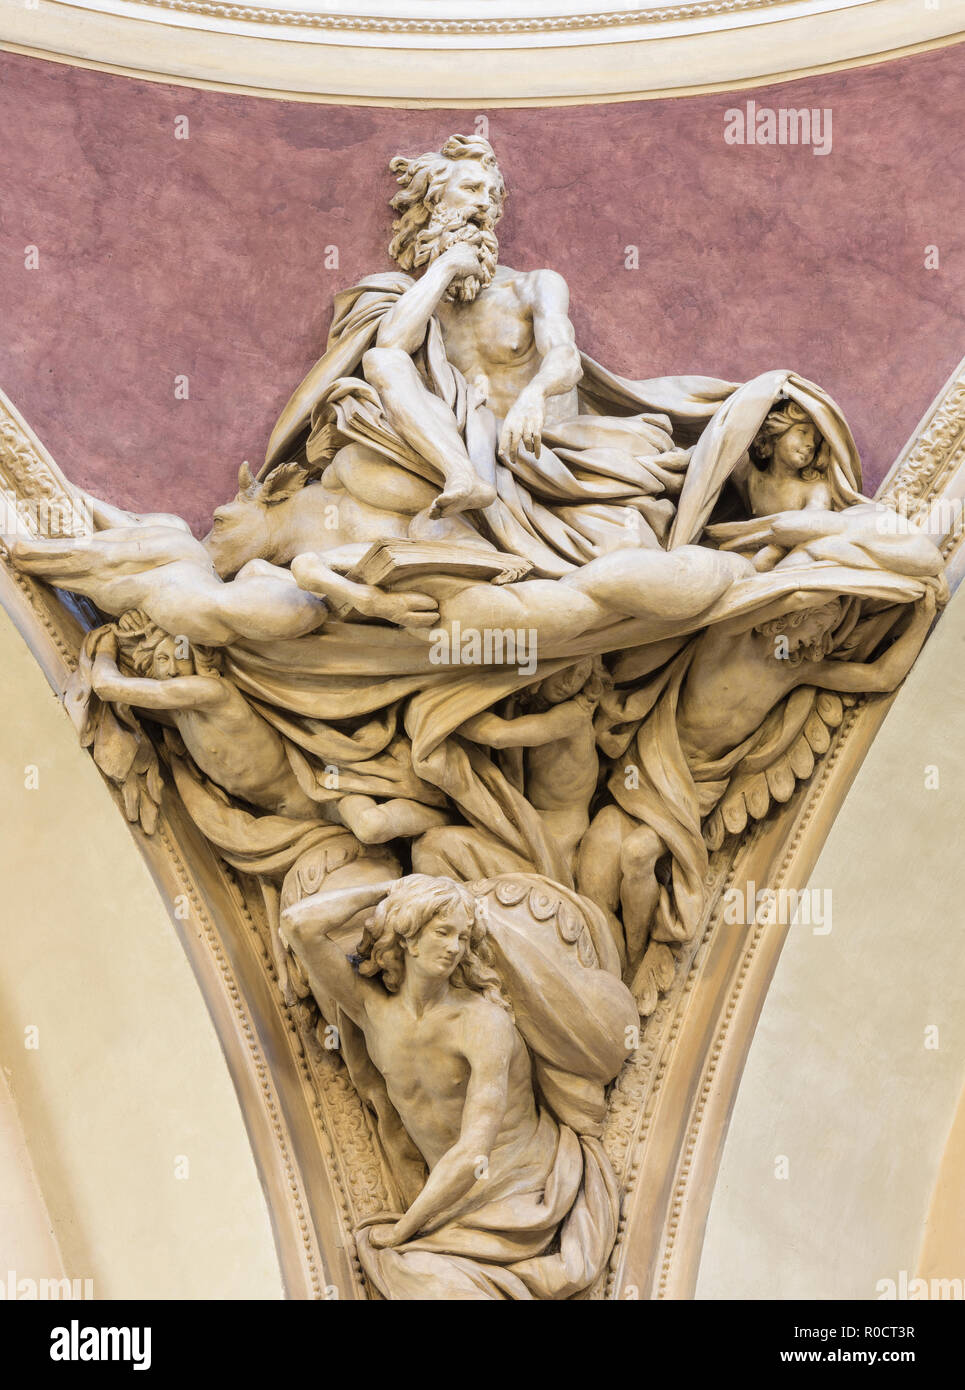 PARMA, Italia - 17 Aprile 2018: La statua barocca di San Luca Evangelista nella cupola della chiesa di Santa Teresa di Domenico Reti da 17 cent. Foto Stock